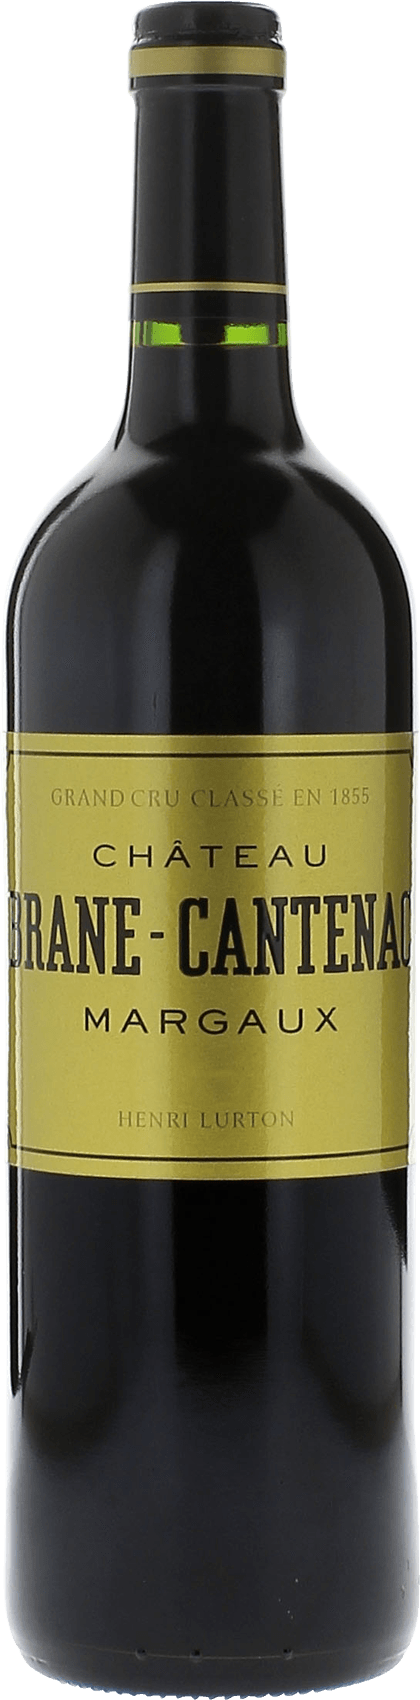 Brane cantenac 1995 2me Grand cru class Margaux, Bordeaux rouge